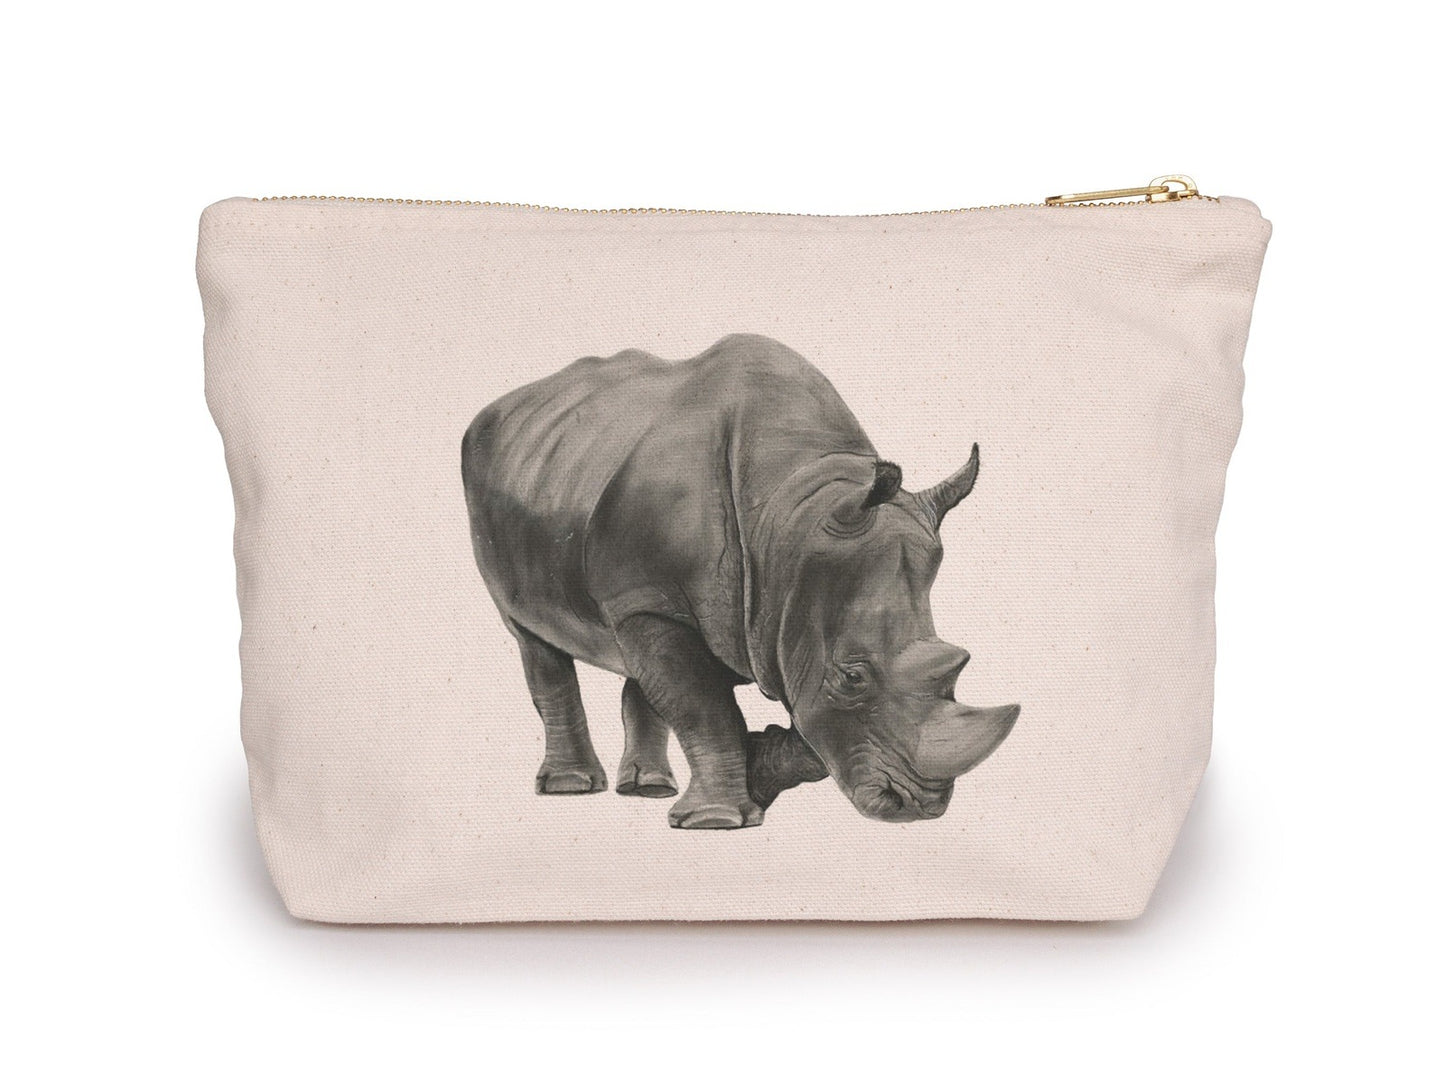 Rhino Pouch Bag From Libra Fine Arts